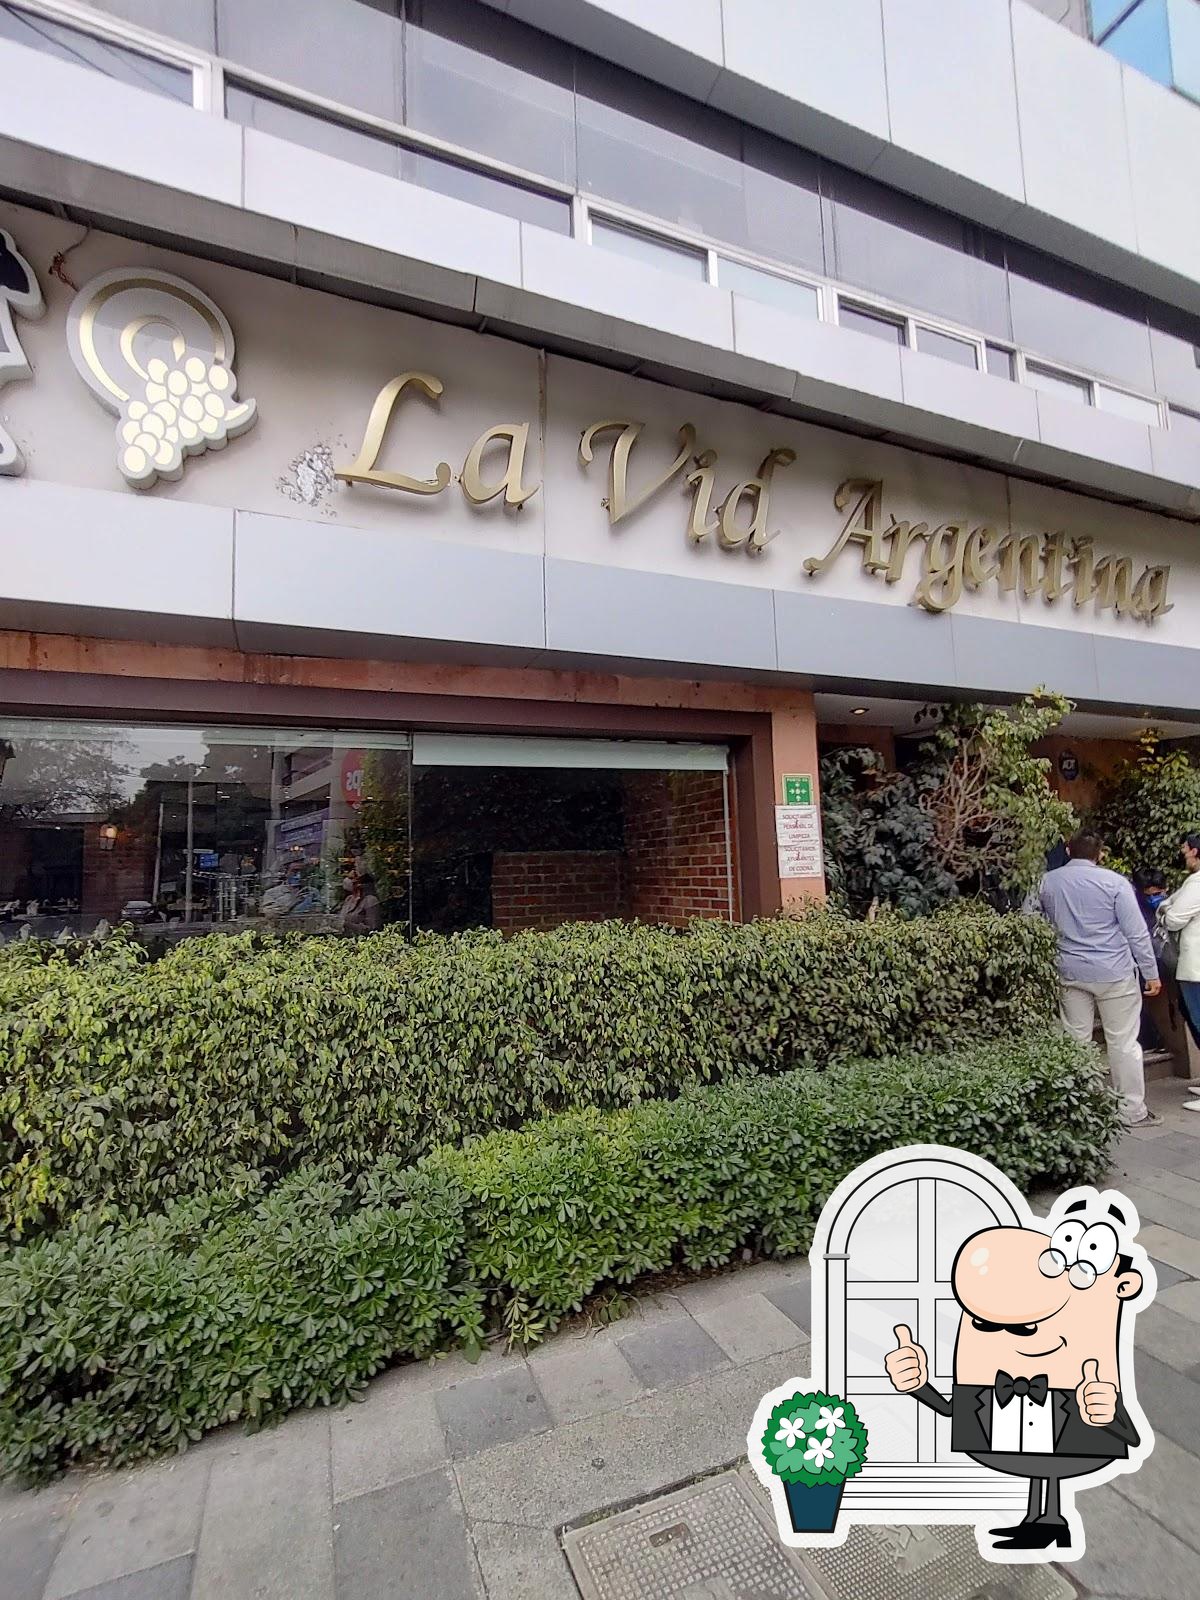 Restaurante La Vid Argentina Insurgentes, Ciudad de México, Av. Insurgentes  Sur 953 - Carta del restaurante y opiniones